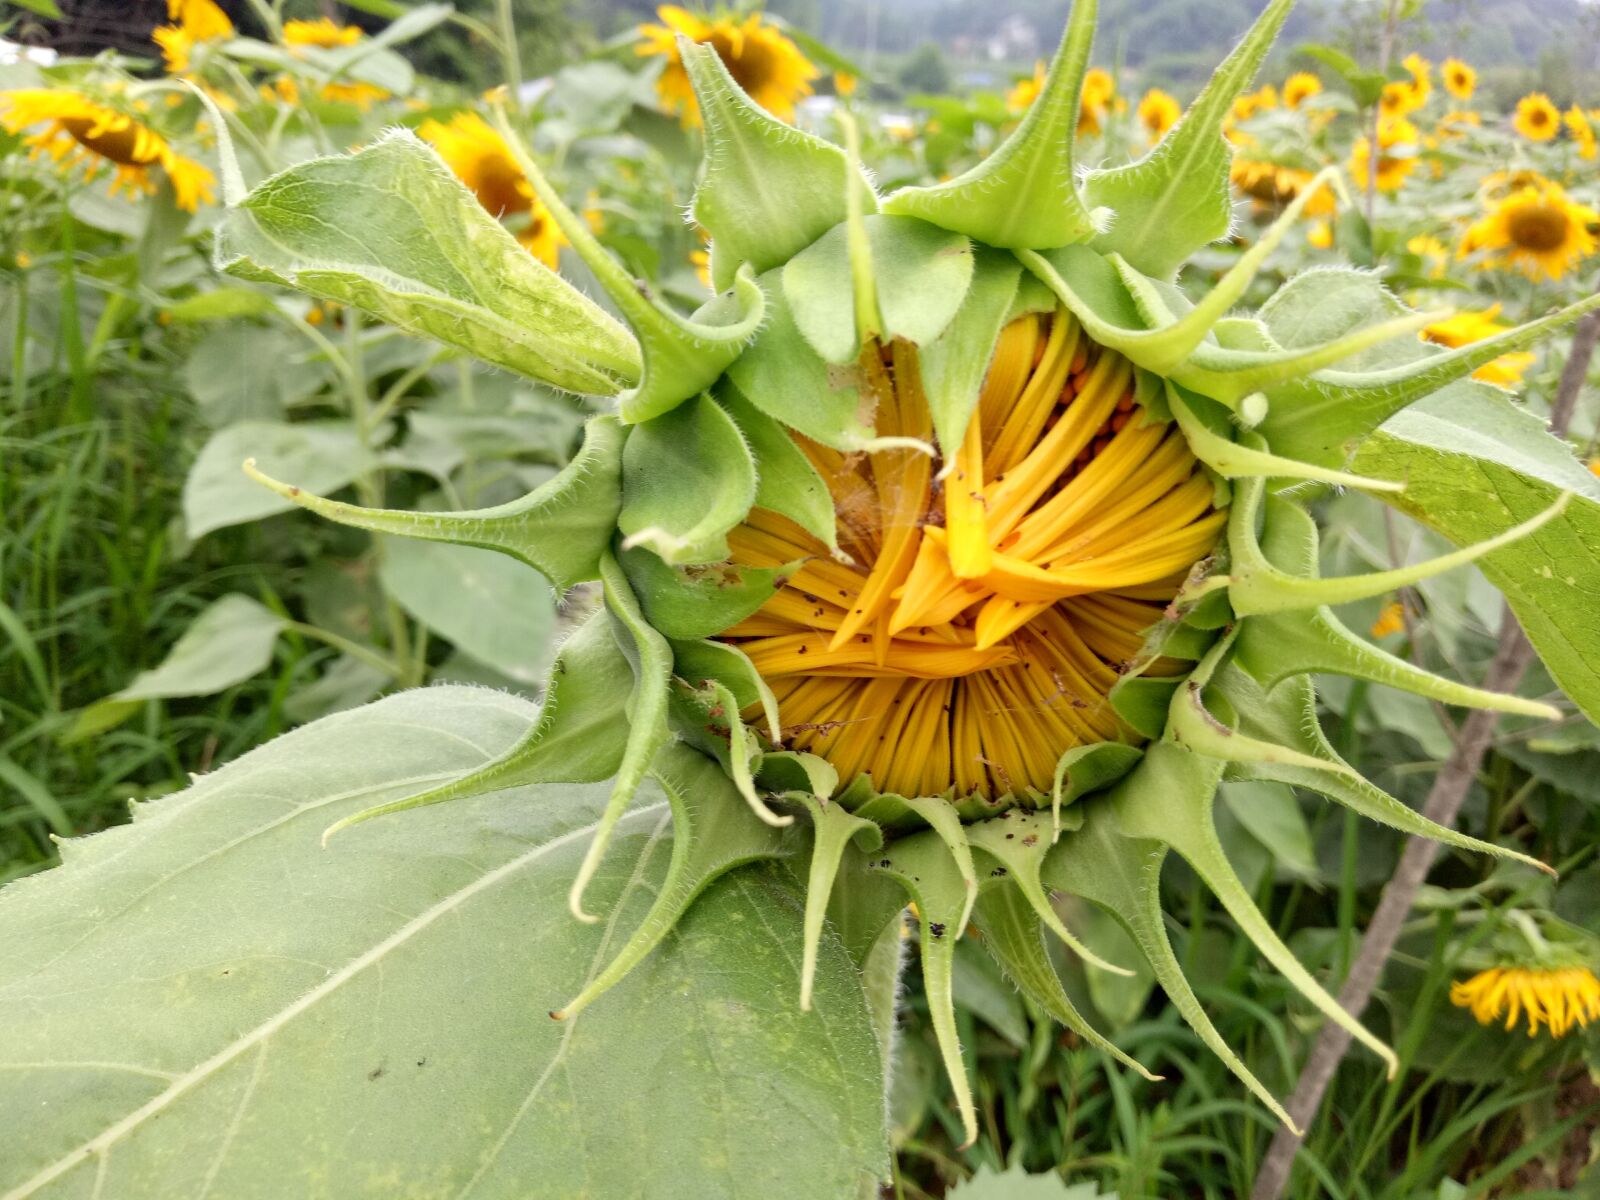 OPPO R9k sample photo. Sunflower, bud, green photography